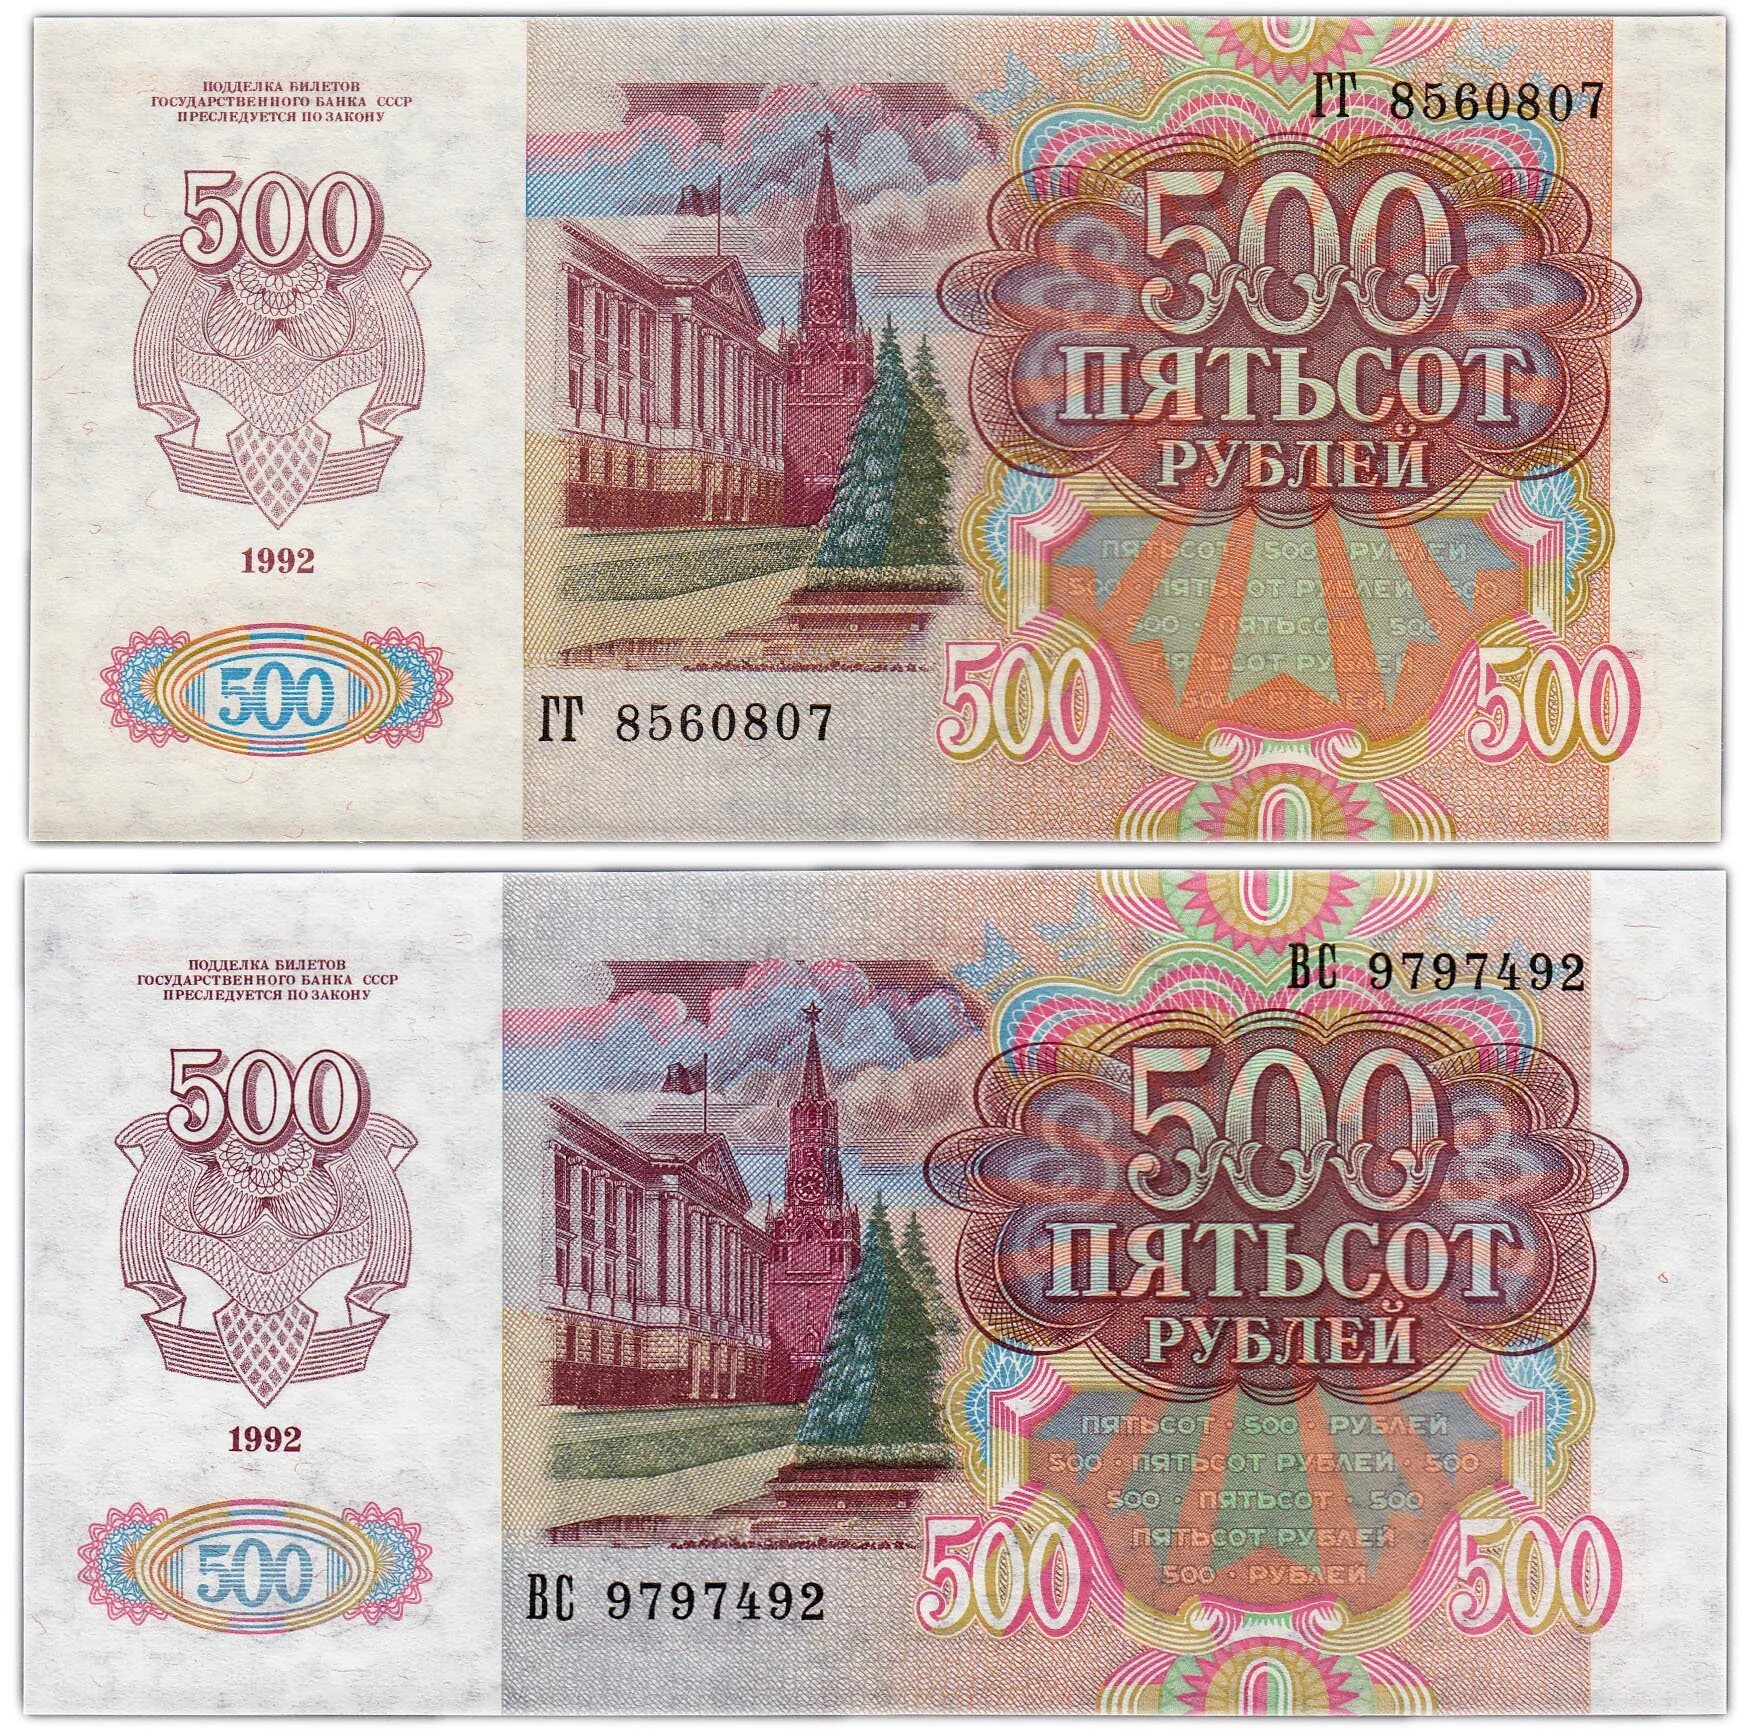 500 рублей 1992. 500 Рублей 1992 года. Банкнота 500 рублей 1992 года. Пятьсот рублей 1992 года. 500 Рублей СССР 1992.